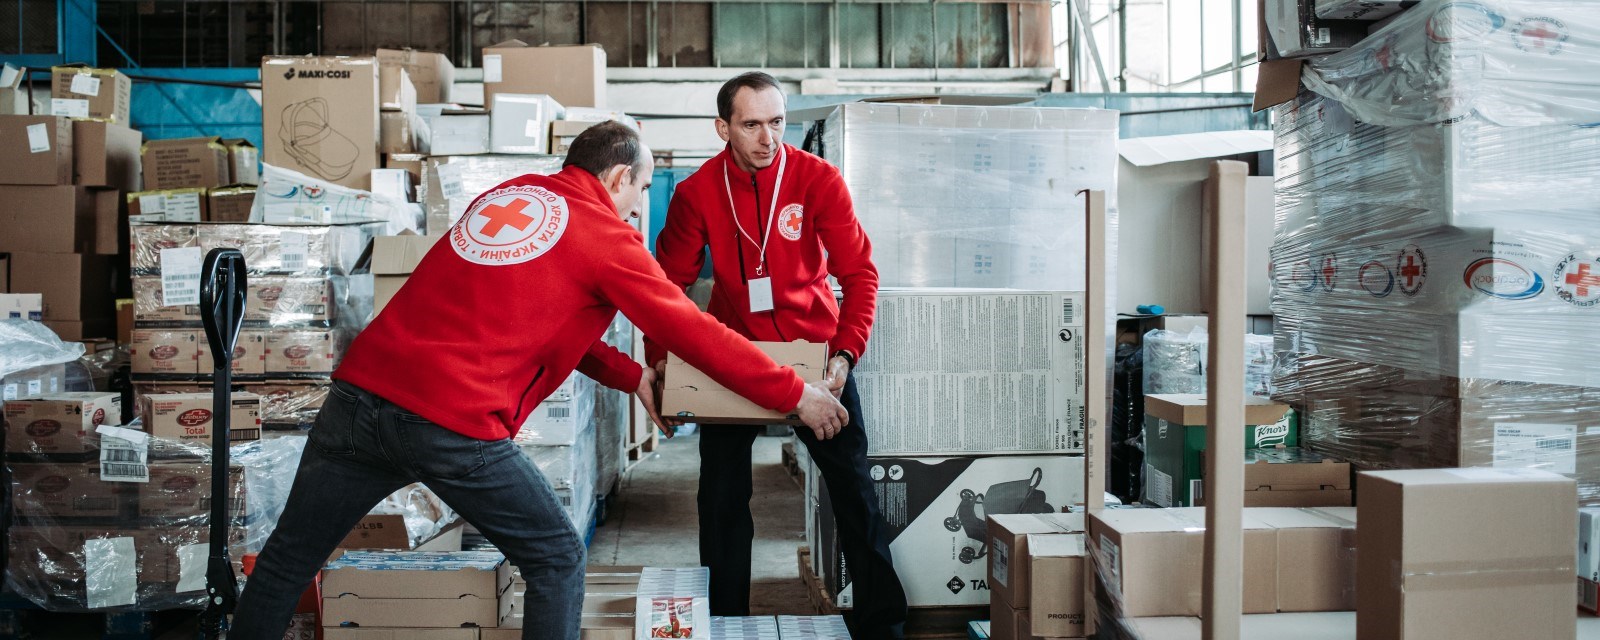 To frivillige fra Røde Kors lemper esker med nødhjelp på et lager.